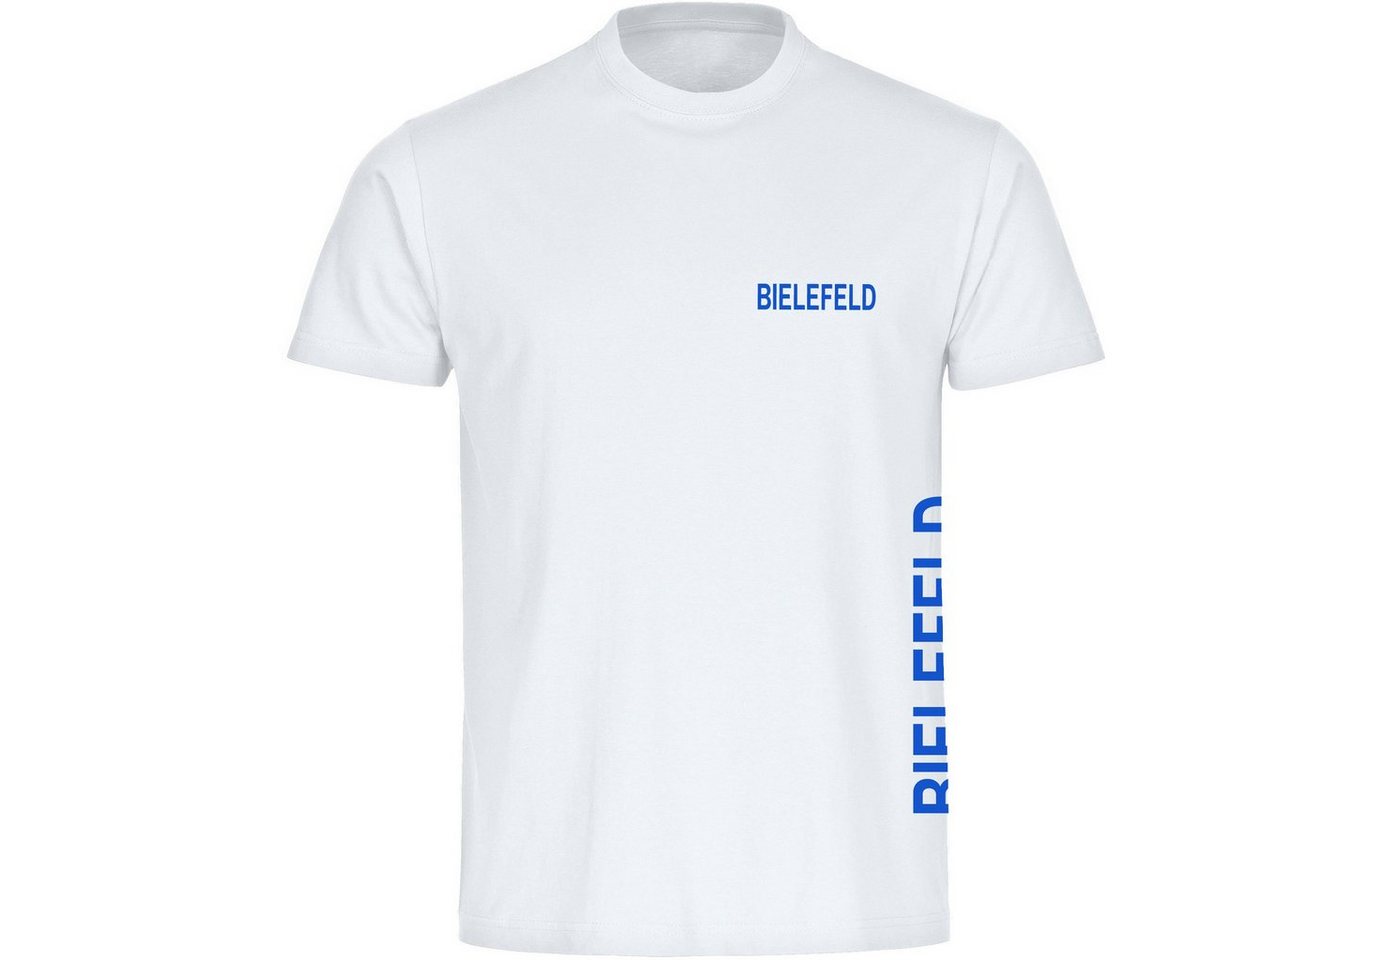 multifanshop T-Shirt Kinder Bielefeld - Brust & Seite - Boy Girl von multifanshop